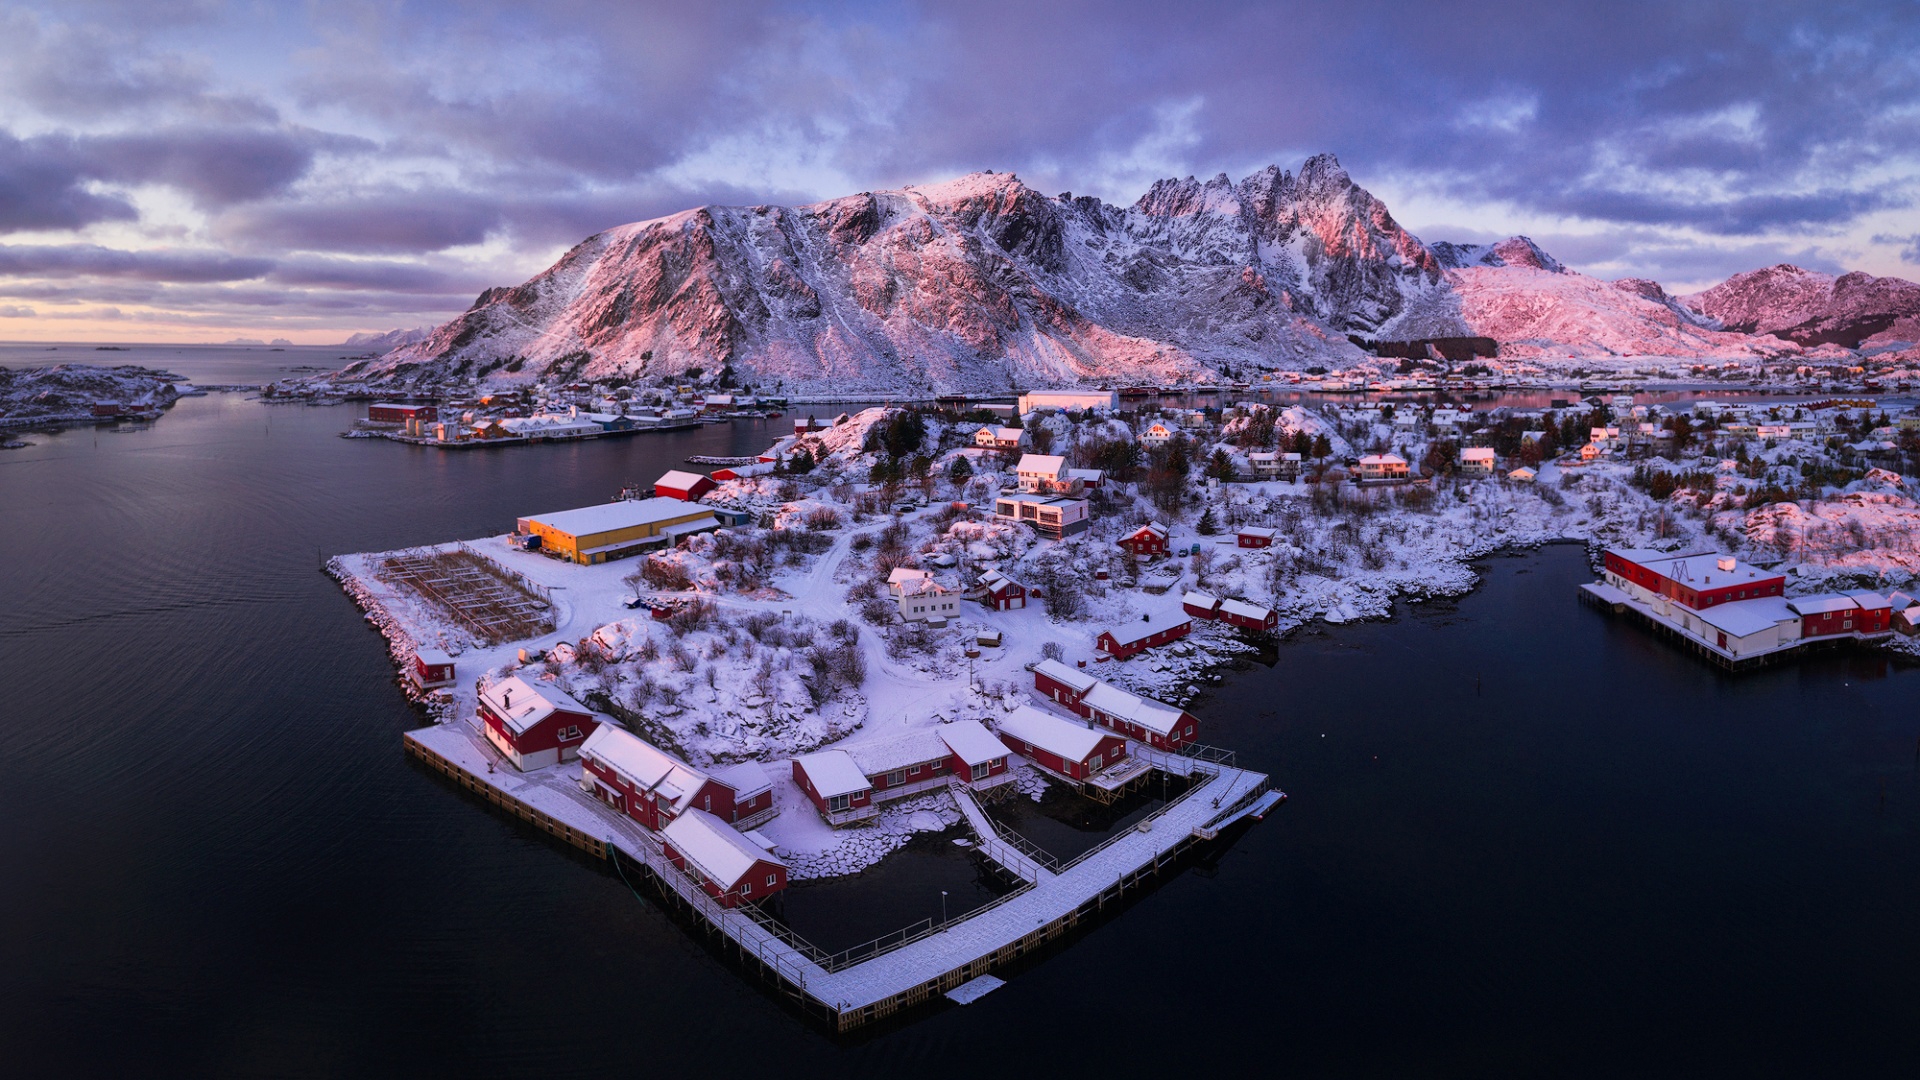 【冬日挪威】 这组照片拍摄于2020年2月，在挪威我们主要去北部的 Lyngen，Senja，Segla 和 Lofoten 拍摄，冬天的挪威 ...